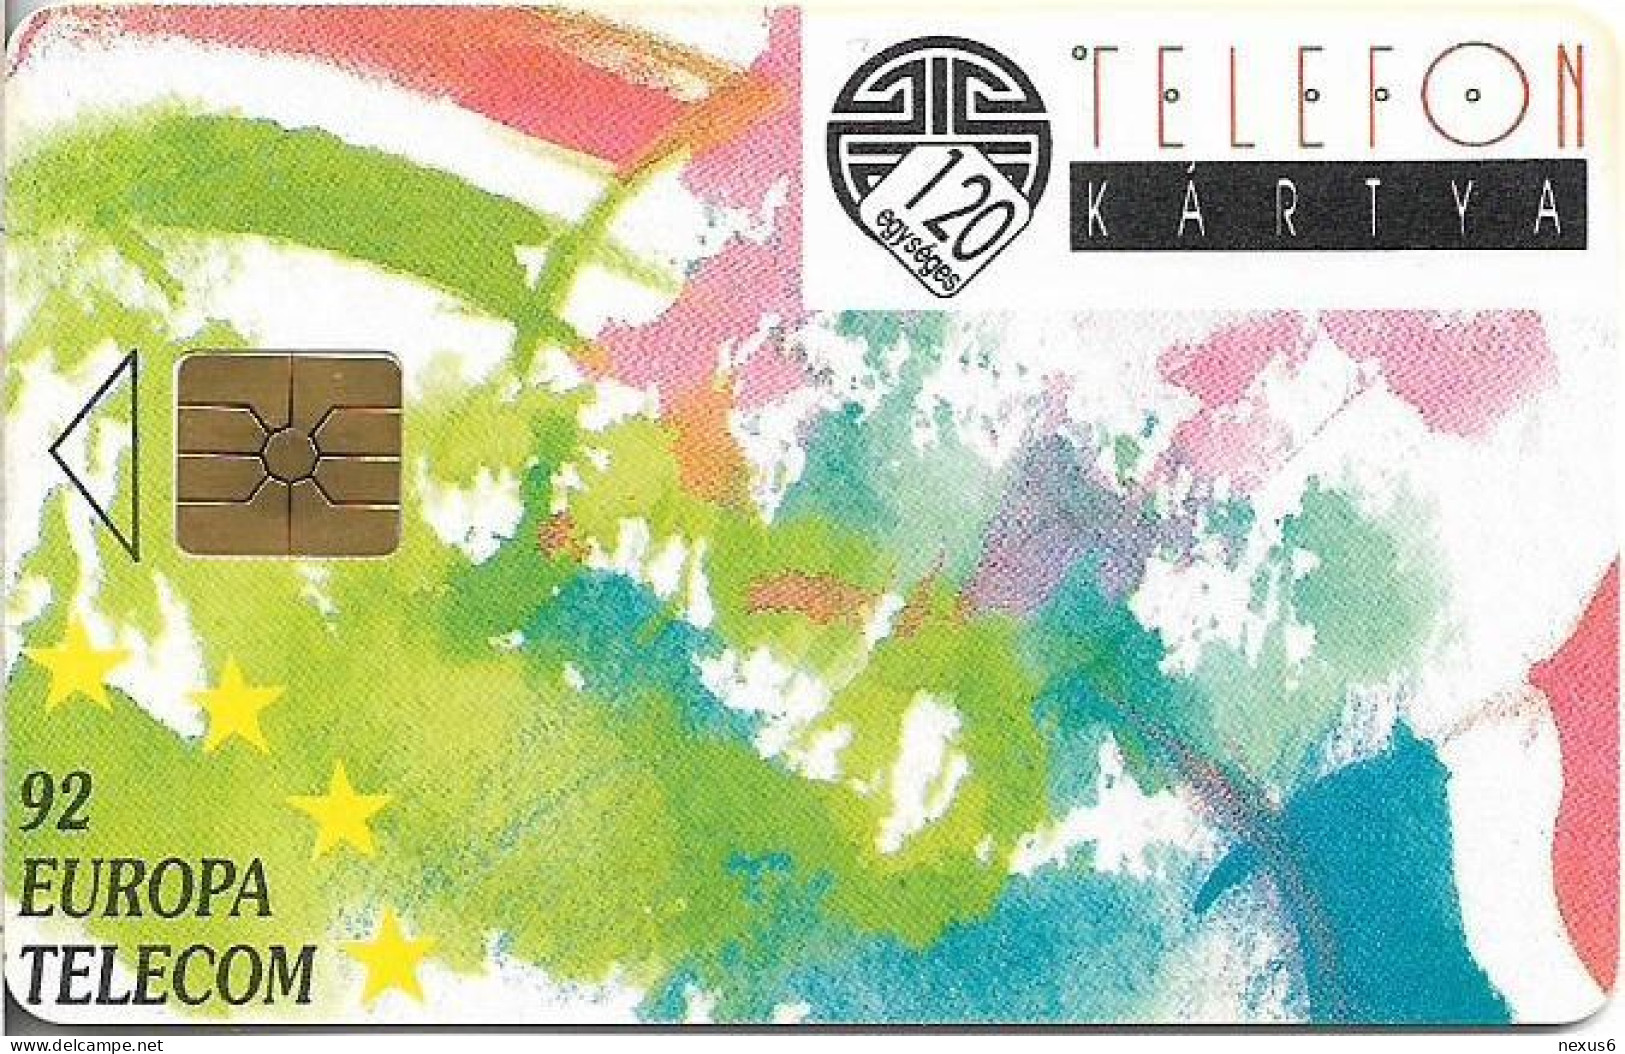 Hungary - Matáv - Europa Telecom 92, Gem1B Not Symm. Red, With Transp. Moreno, 10.1992, 120U, 10.000ex, Used - Hungary